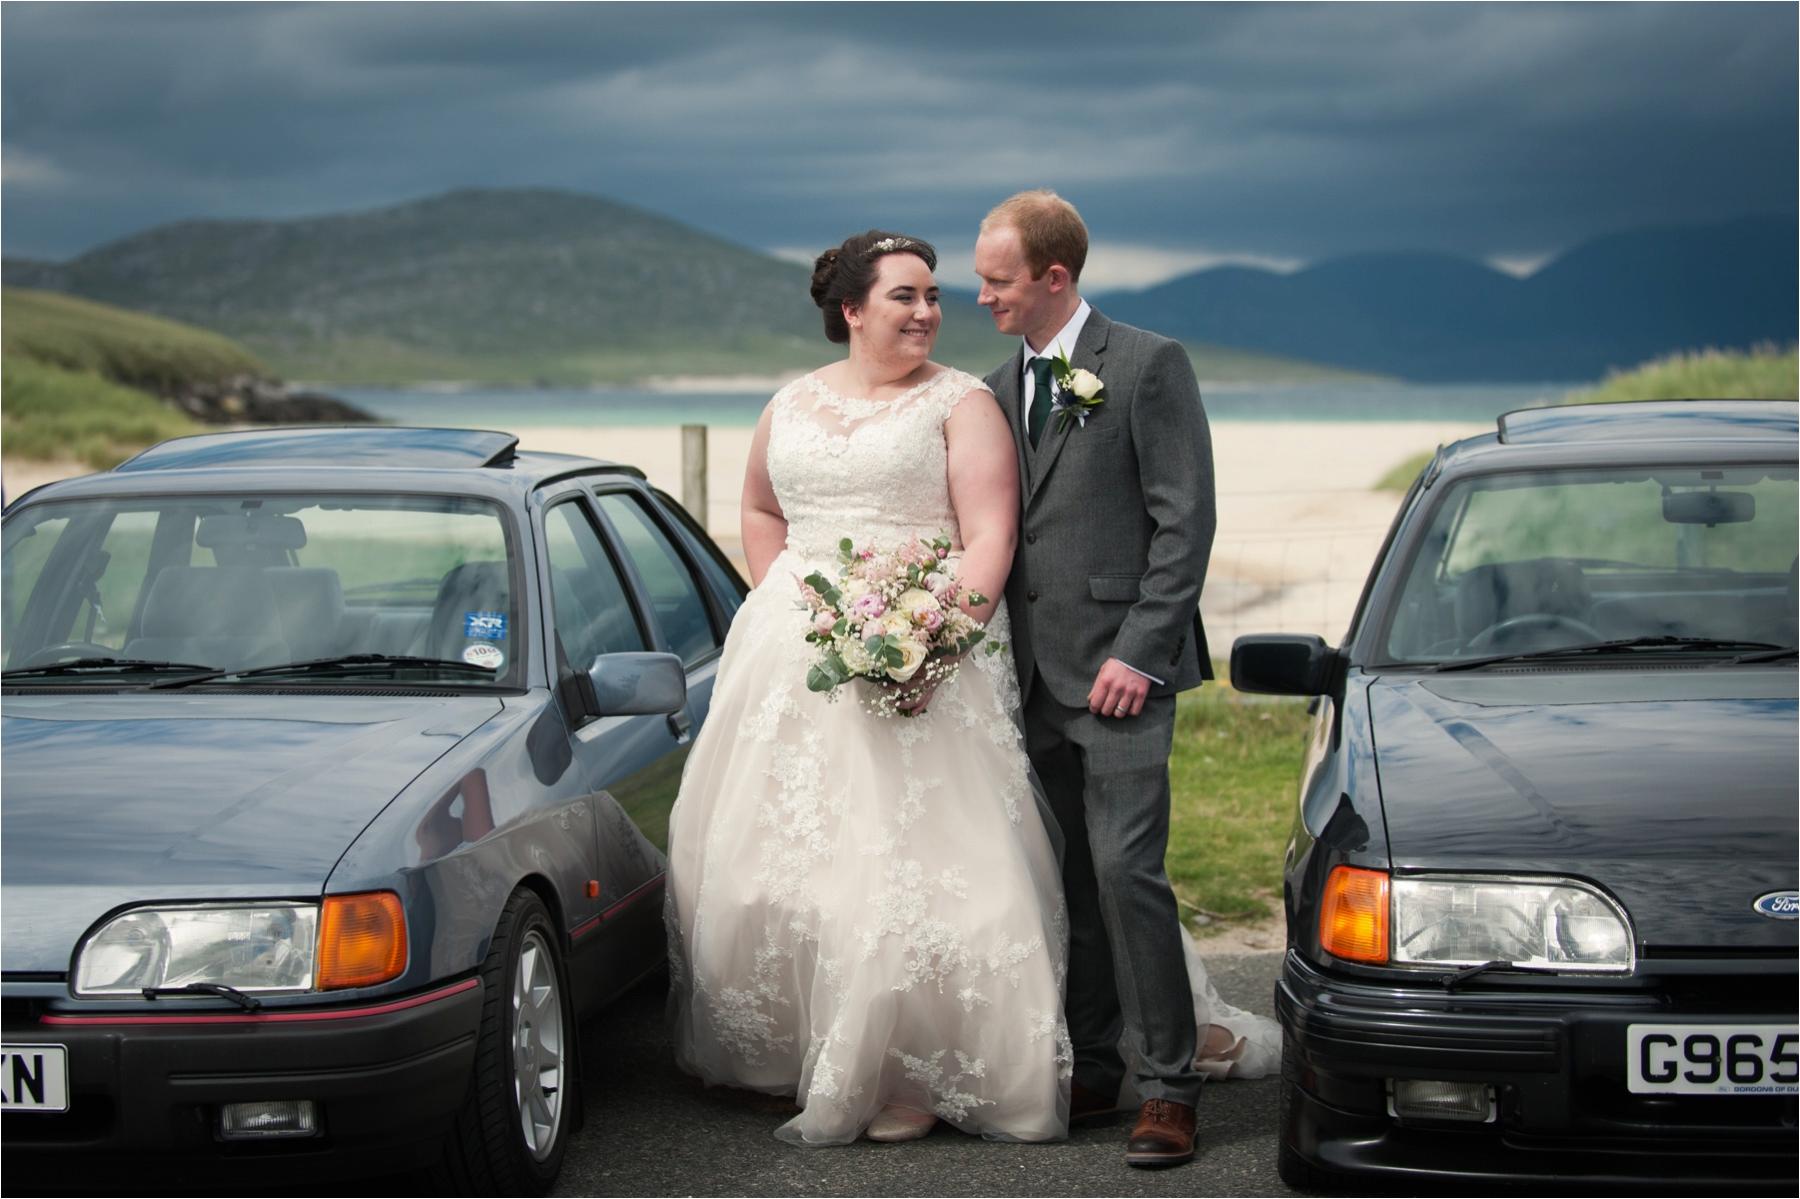 isle of harris couple shot at scottish wedding photo